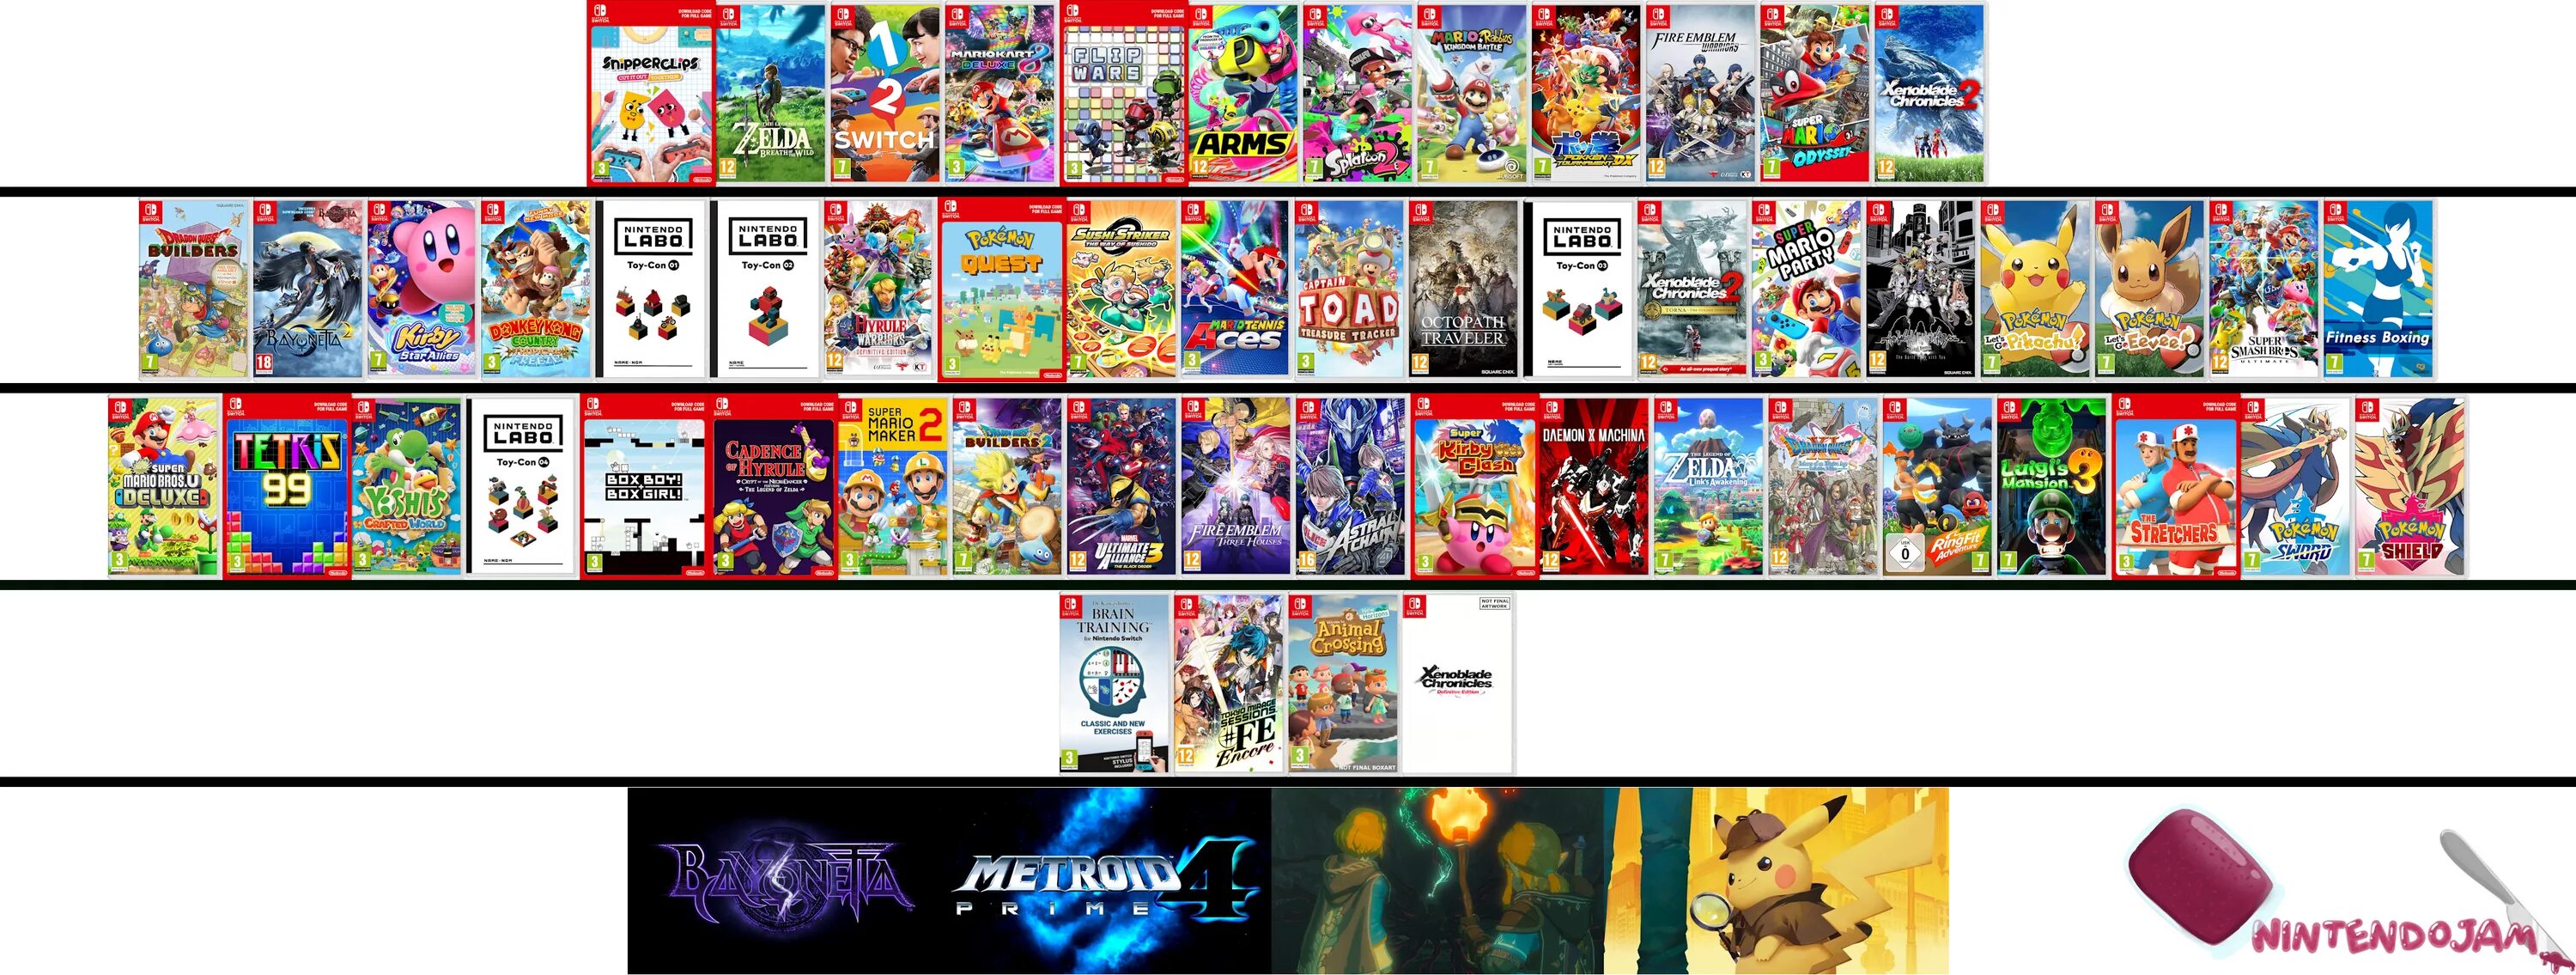 Как установить игры на прошитый нинтендо свитч. Нинтендо свитч игры список. Nintendo Switch games 2020. Нинтендо свитч персонажи. Лучшие игры для Nintendo Switch.